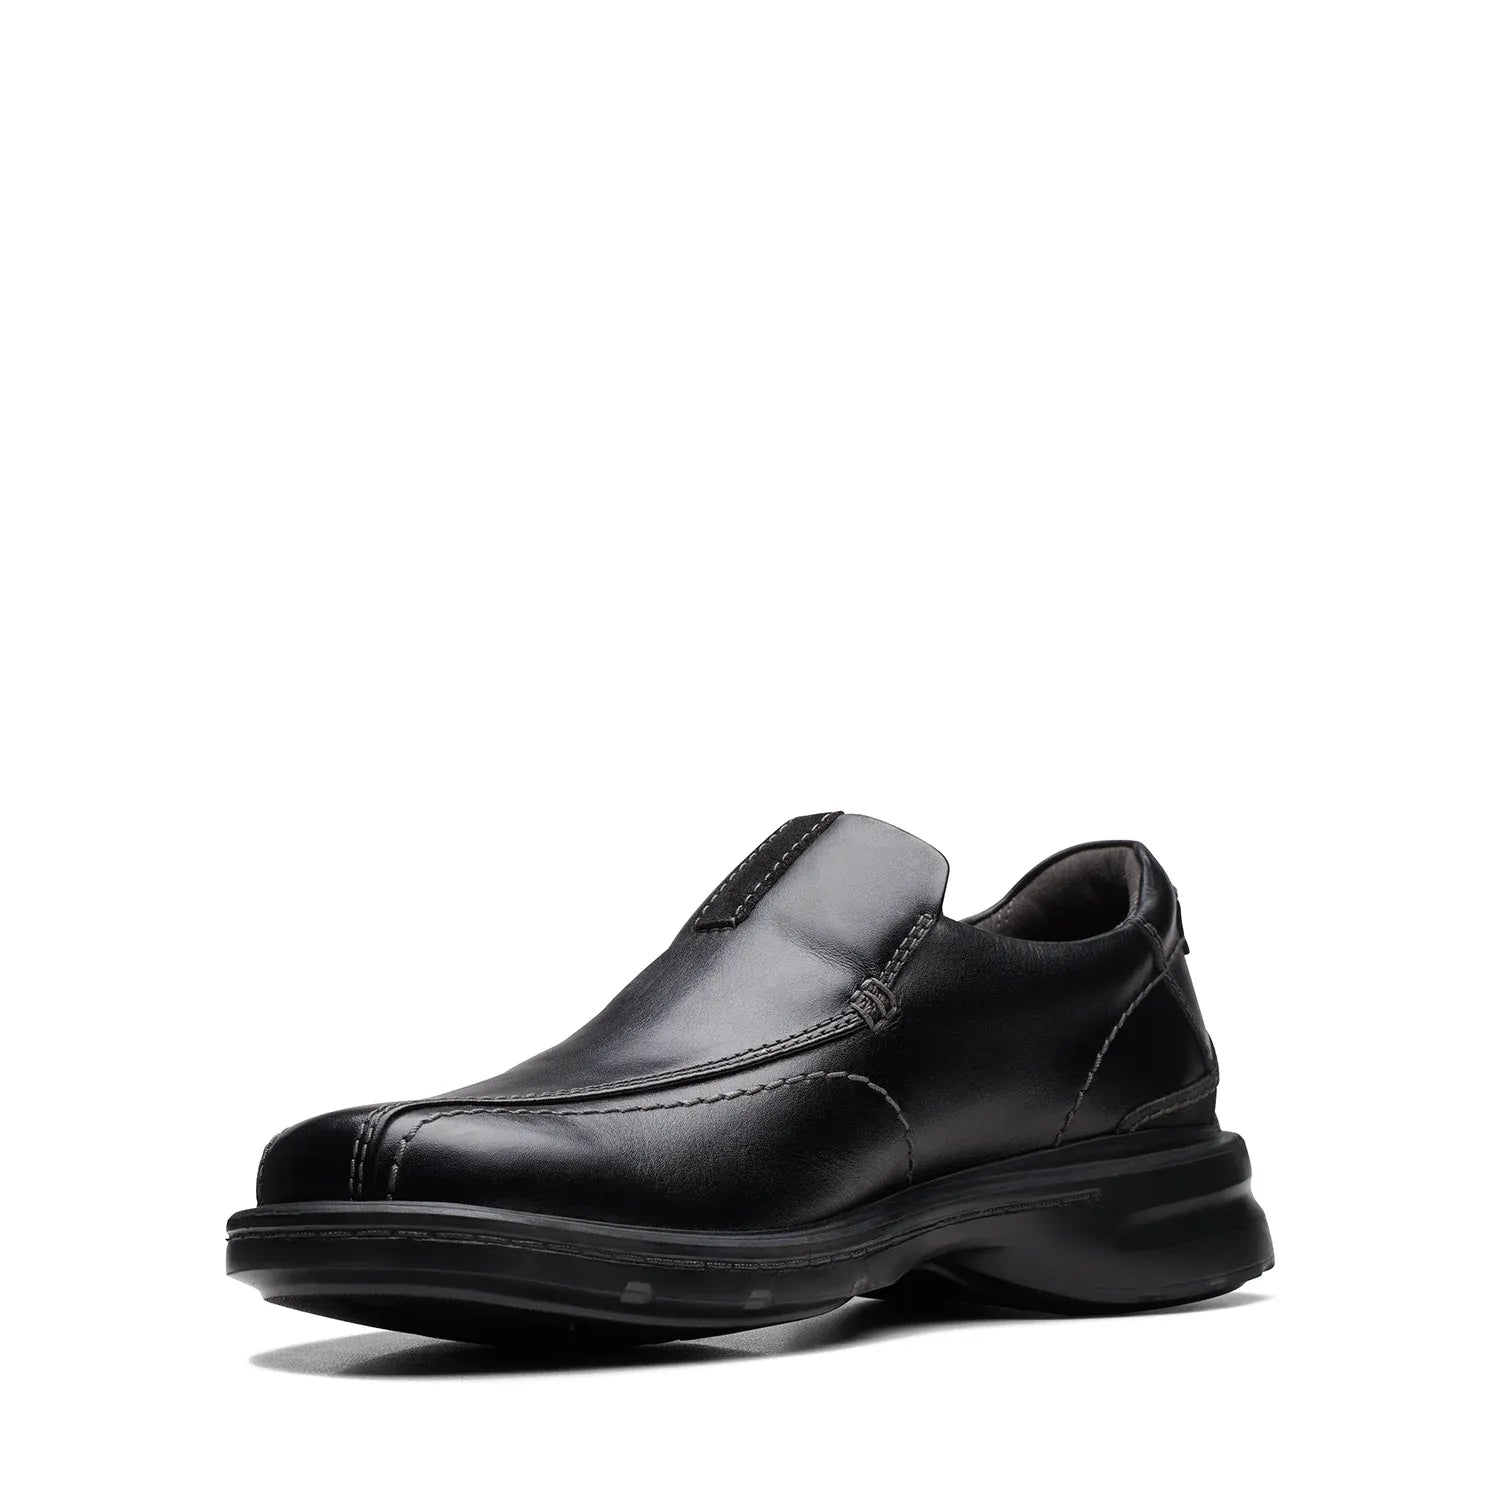 Clarks Gessler Step Black Leather - Classic Sophistication